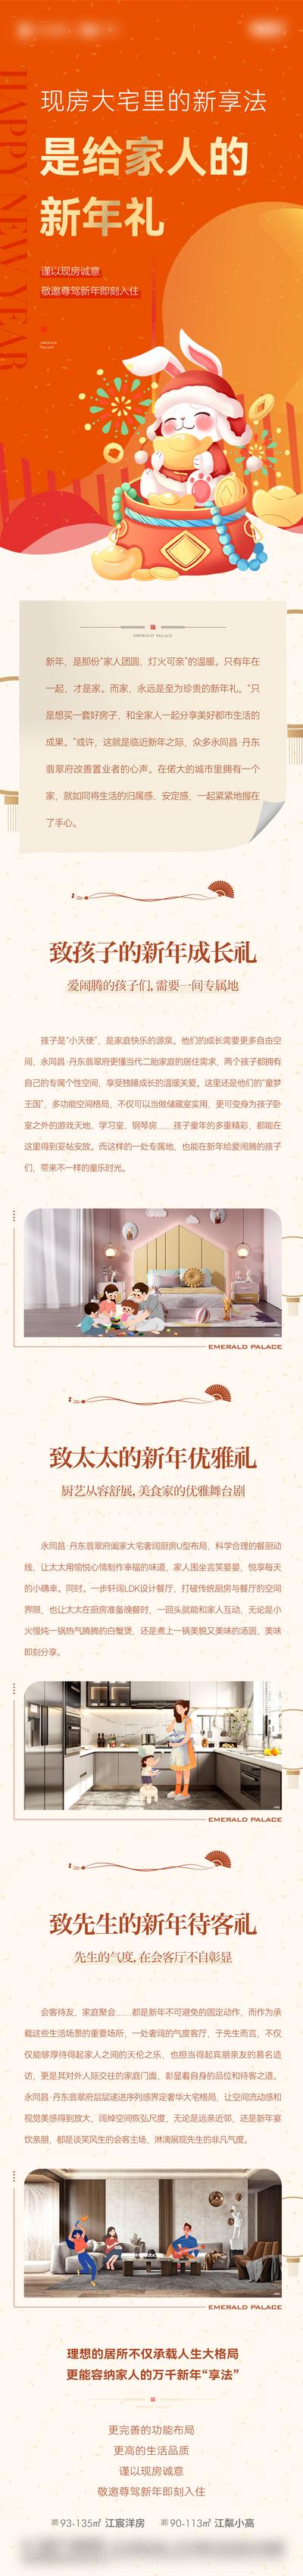 南门网 专题设计 长图 房地产 厨房 儿童房 客厅 户型 插画 价值点 新年礼